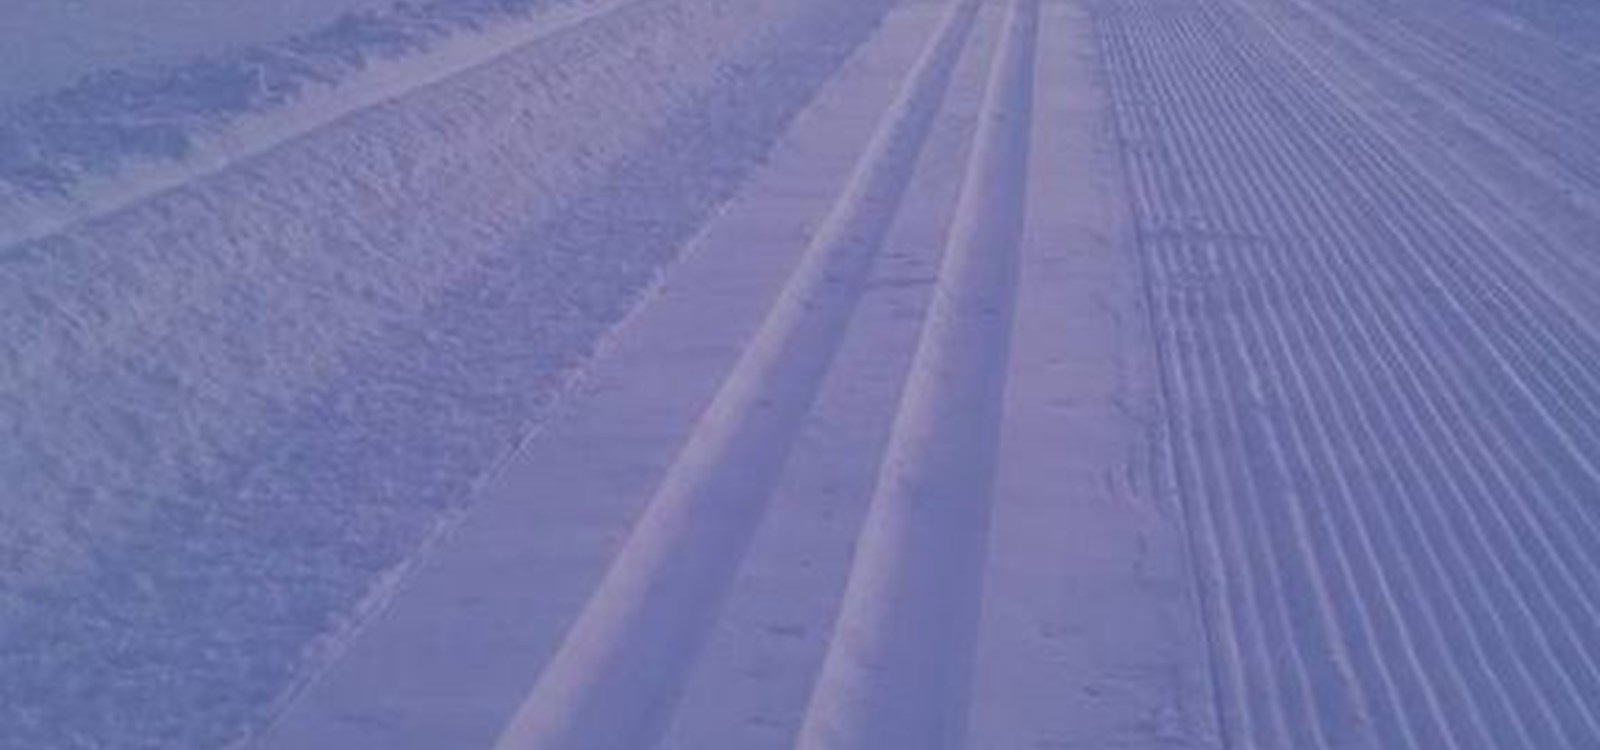 Ny løypeleggar syter for strøkne spor i området Grindafjell ski preparerar.